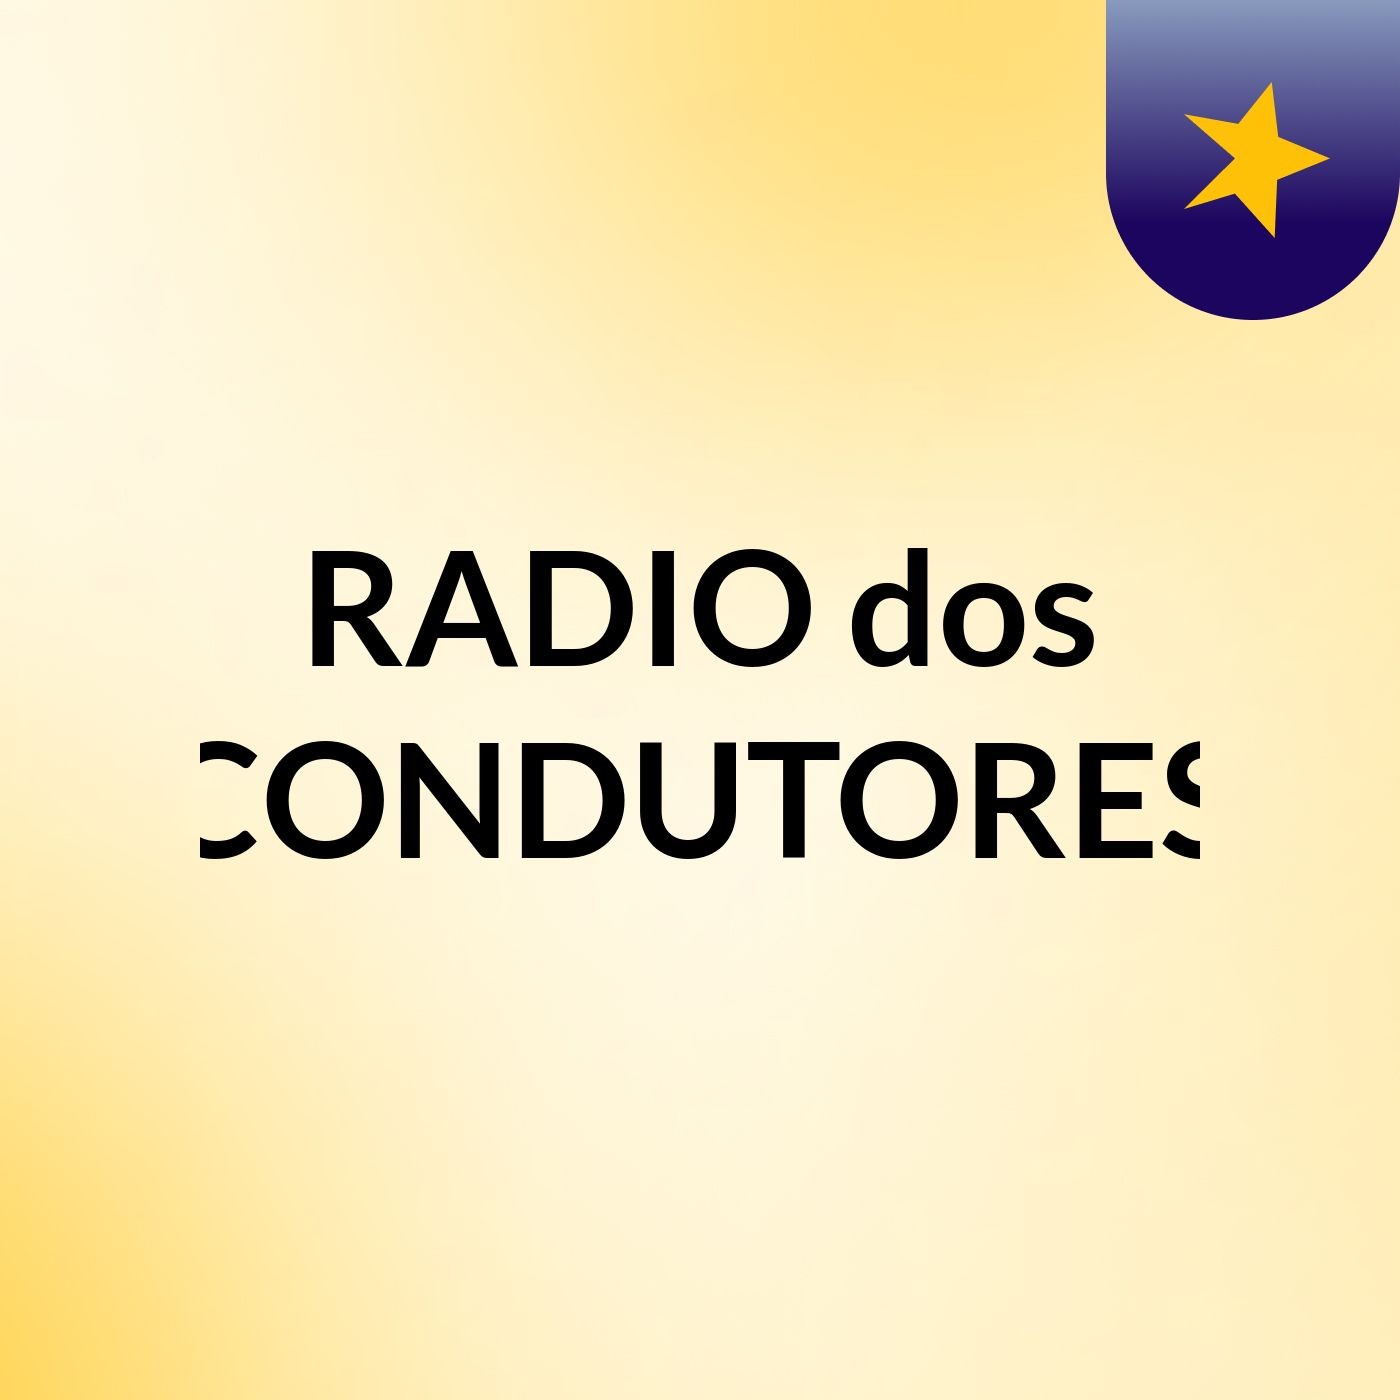 RADIO dos CONDUTORES